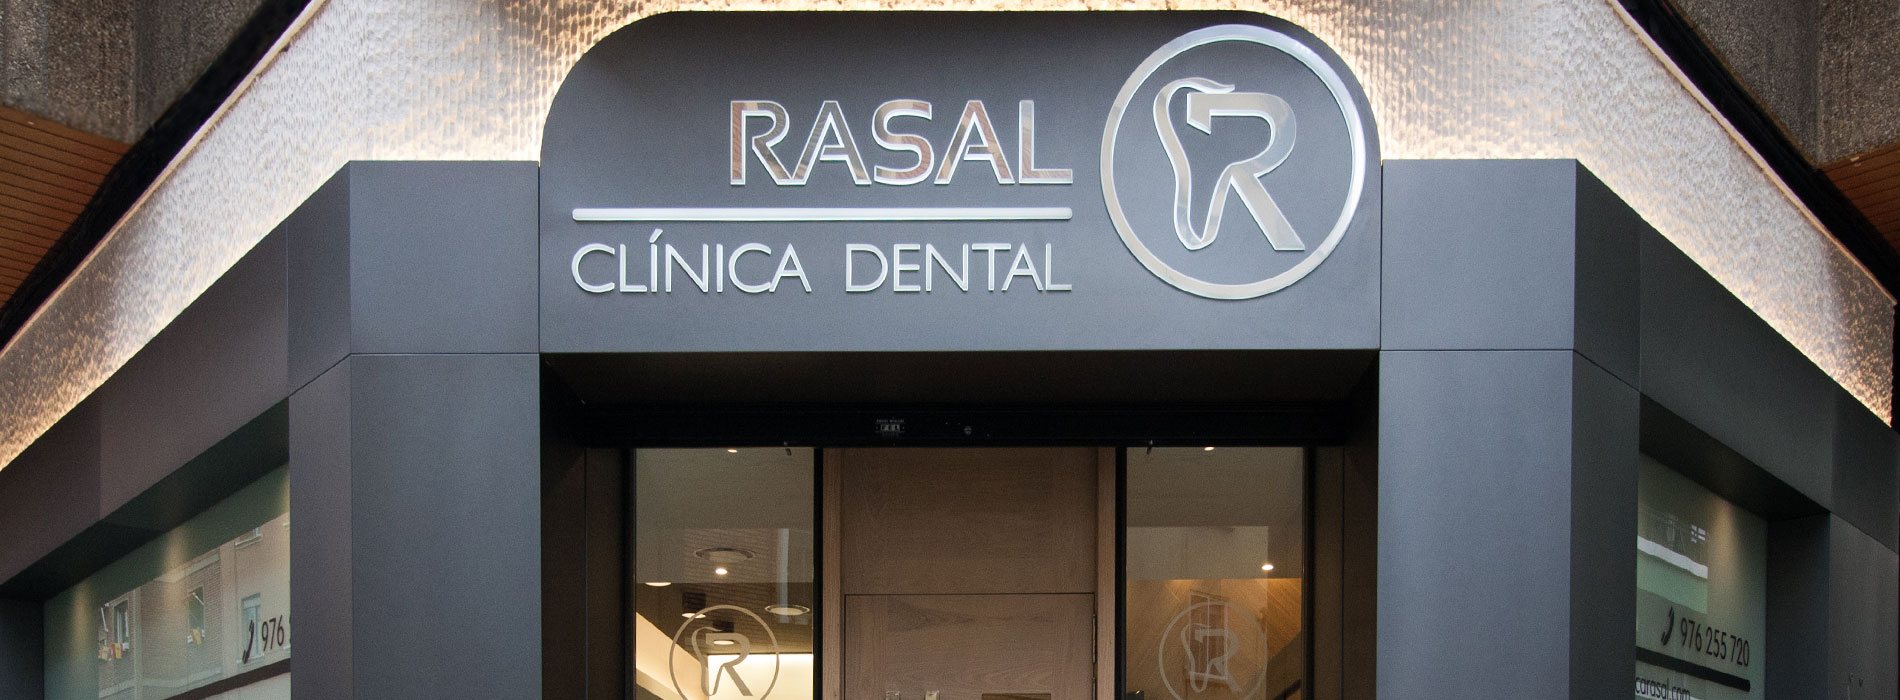 Clínica Dental Rasal